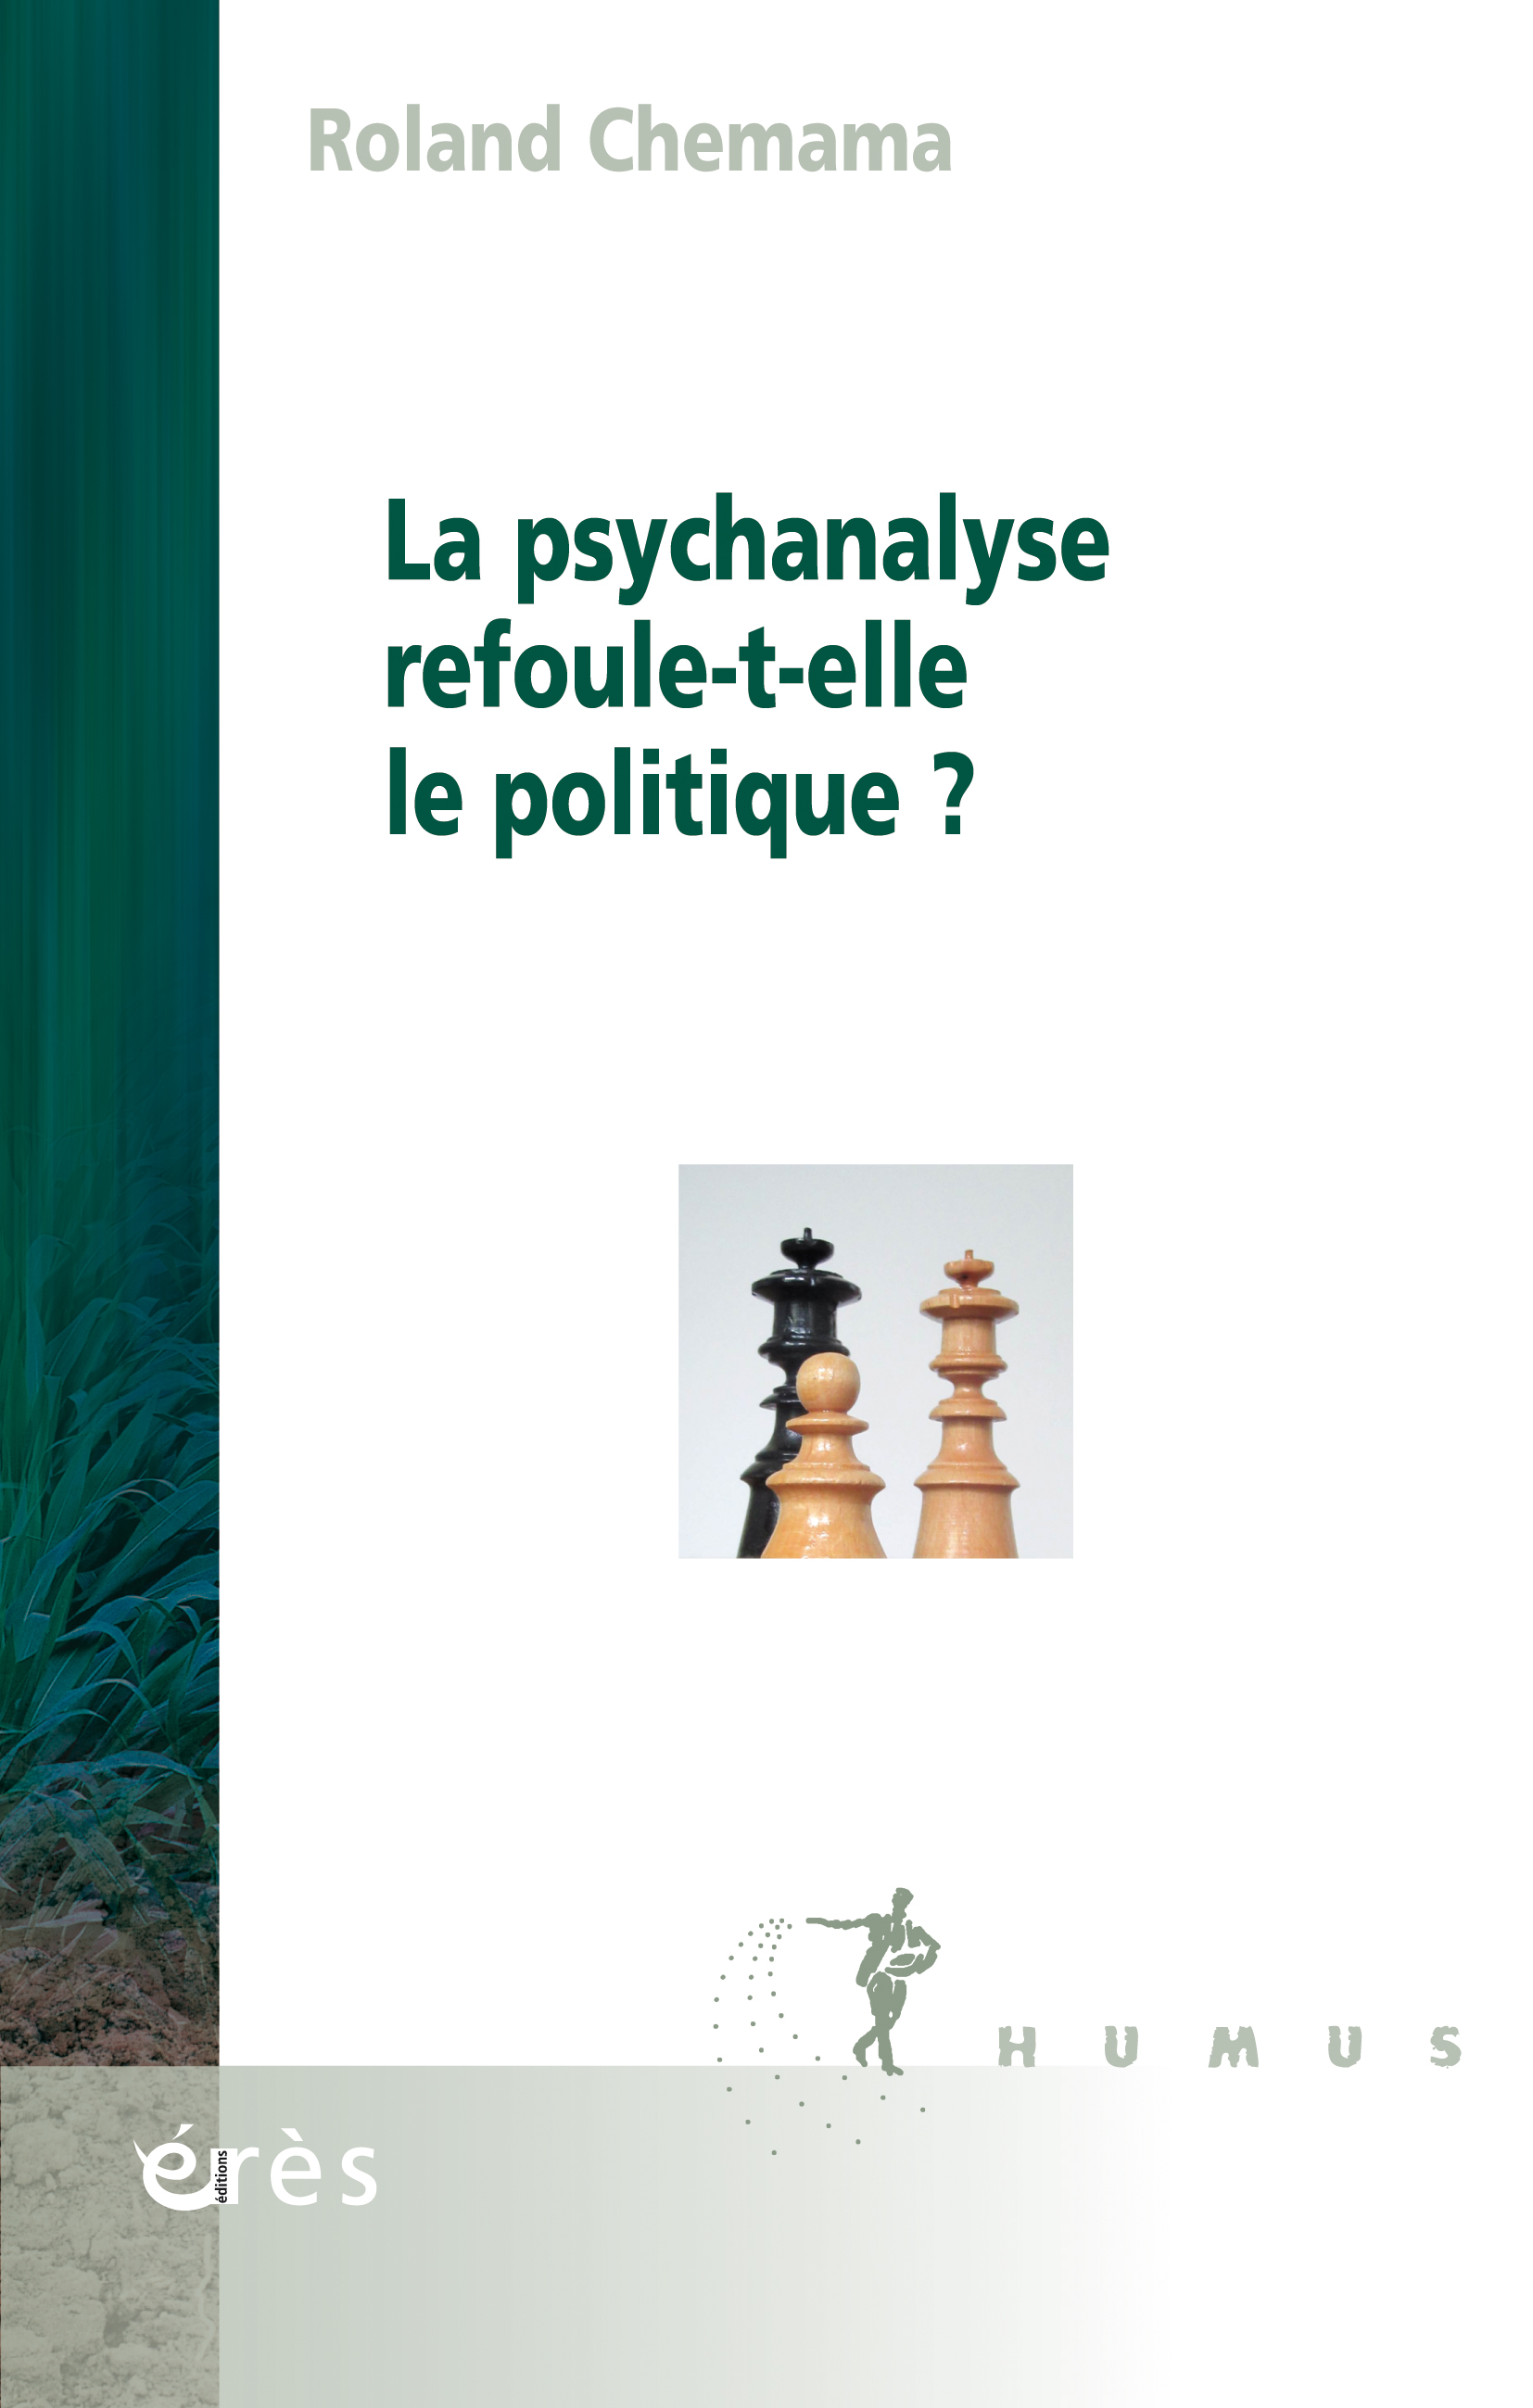 Couverture du livre de R.Chemama"La psychanalyse refoule-t-elle le politique"